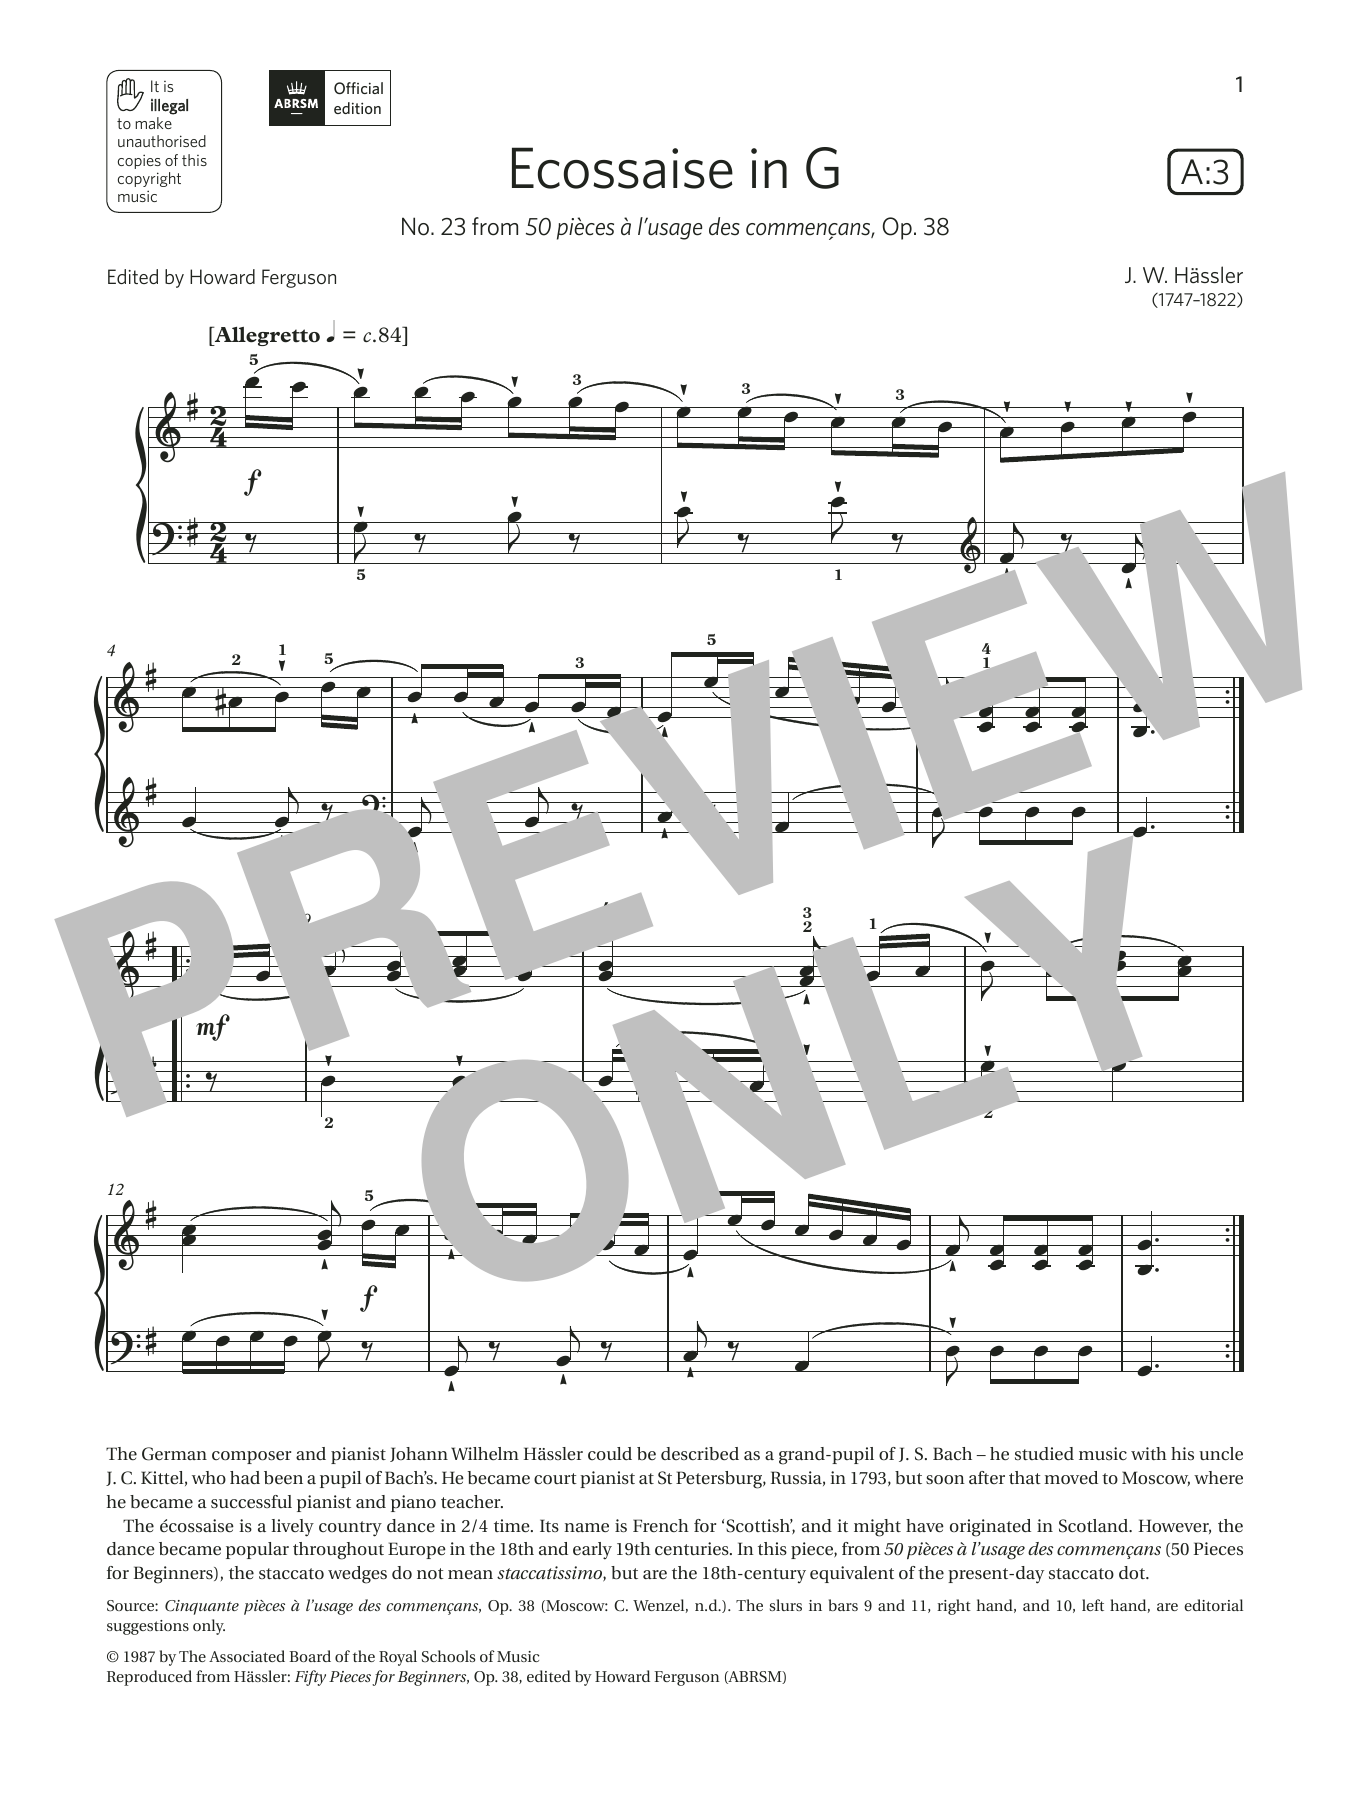 Download J. W. Hässler Ecossaise in G (Grade 2, list A3, from Sheet Music